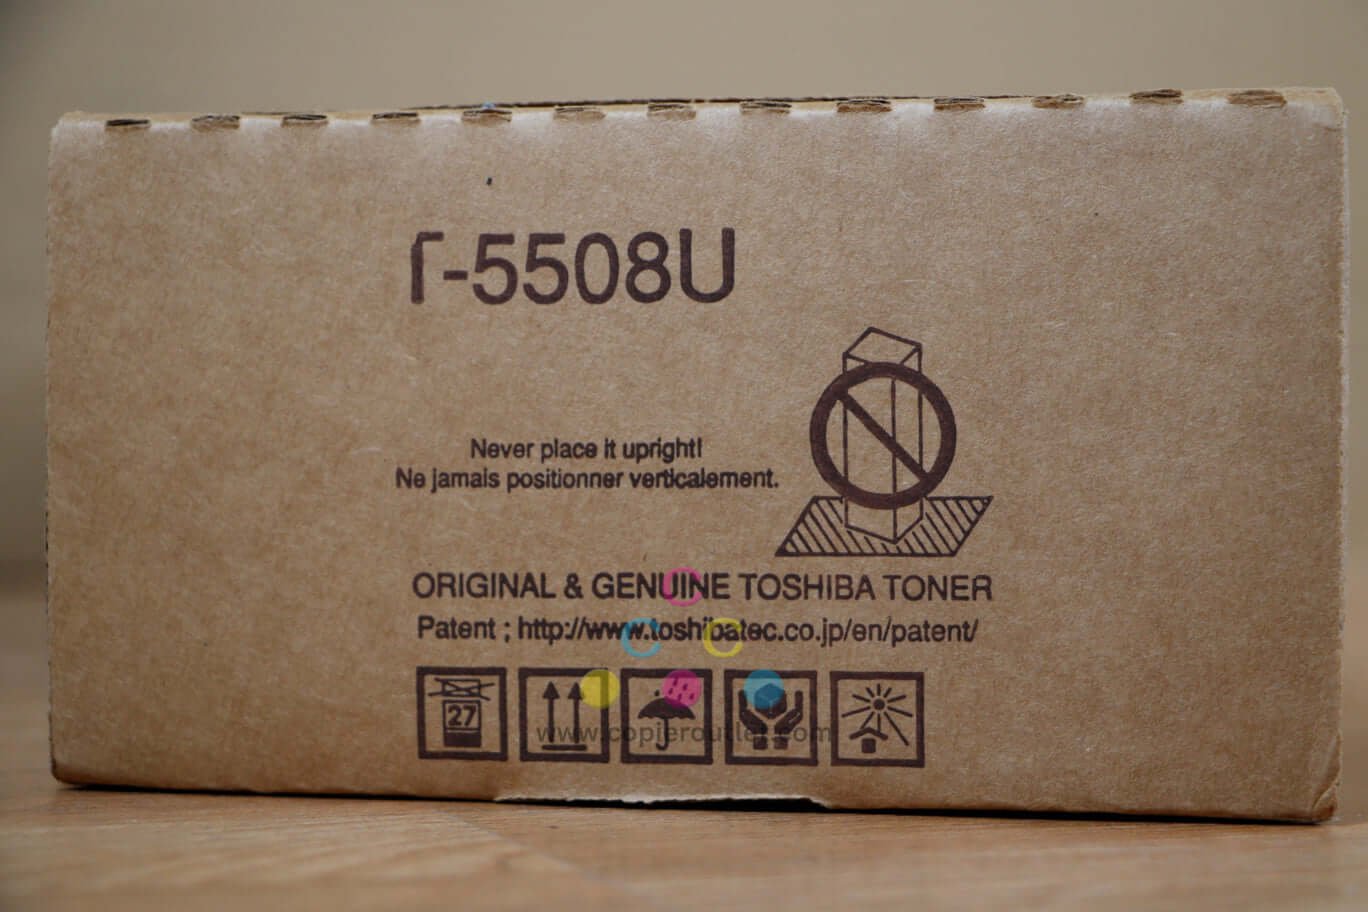 Genuine Toshiba T5508U Black Toner Cart e-STUDIO 5508A/6508A/6508AG/8508A/8508AG